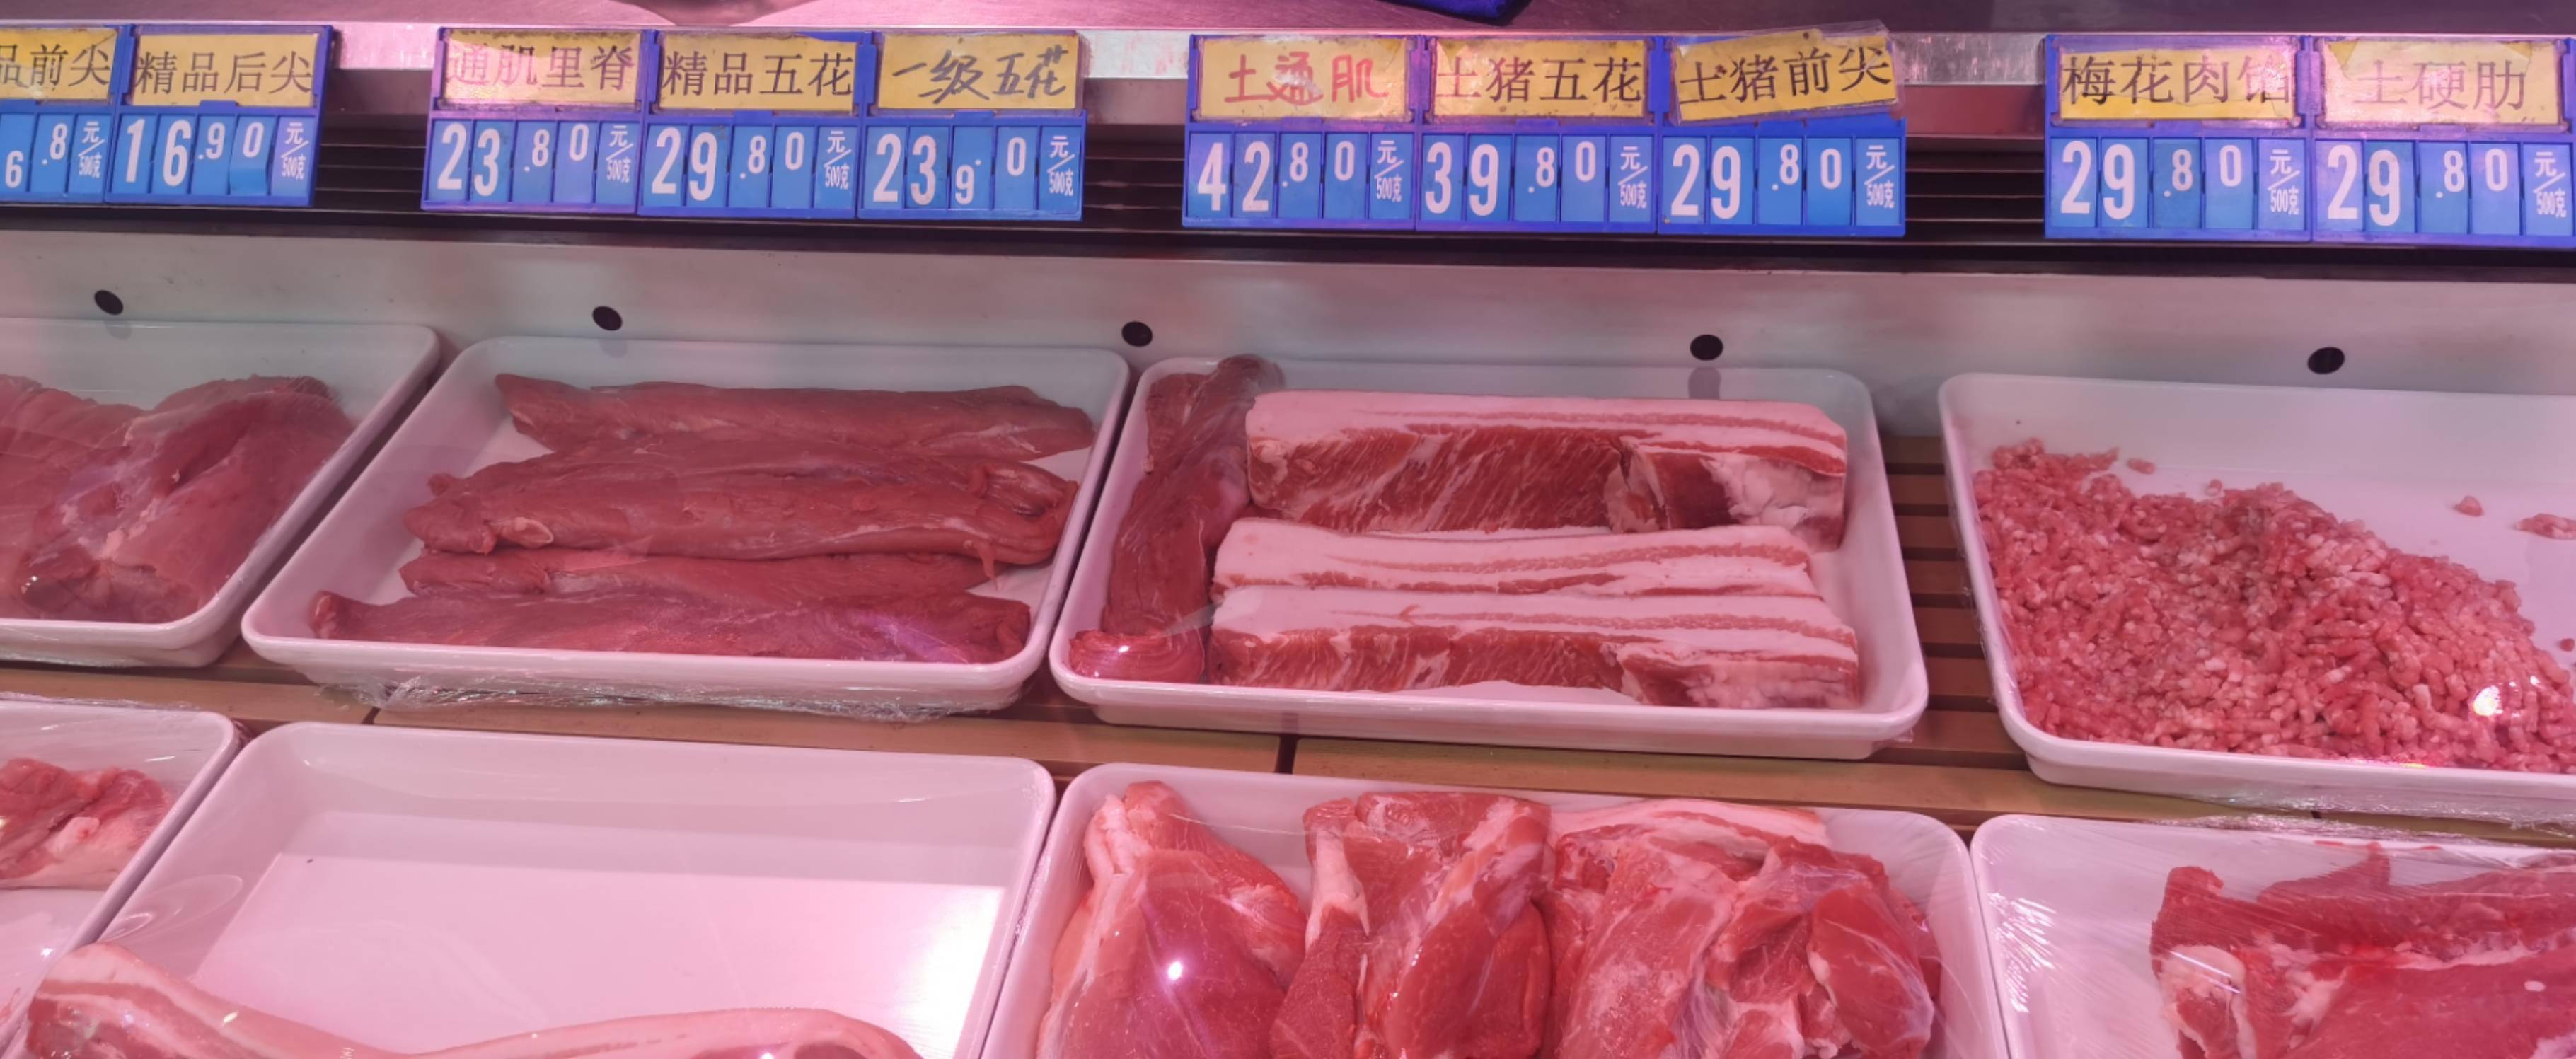 猪肉批发价格连降10周，供应最紧张时期已过去